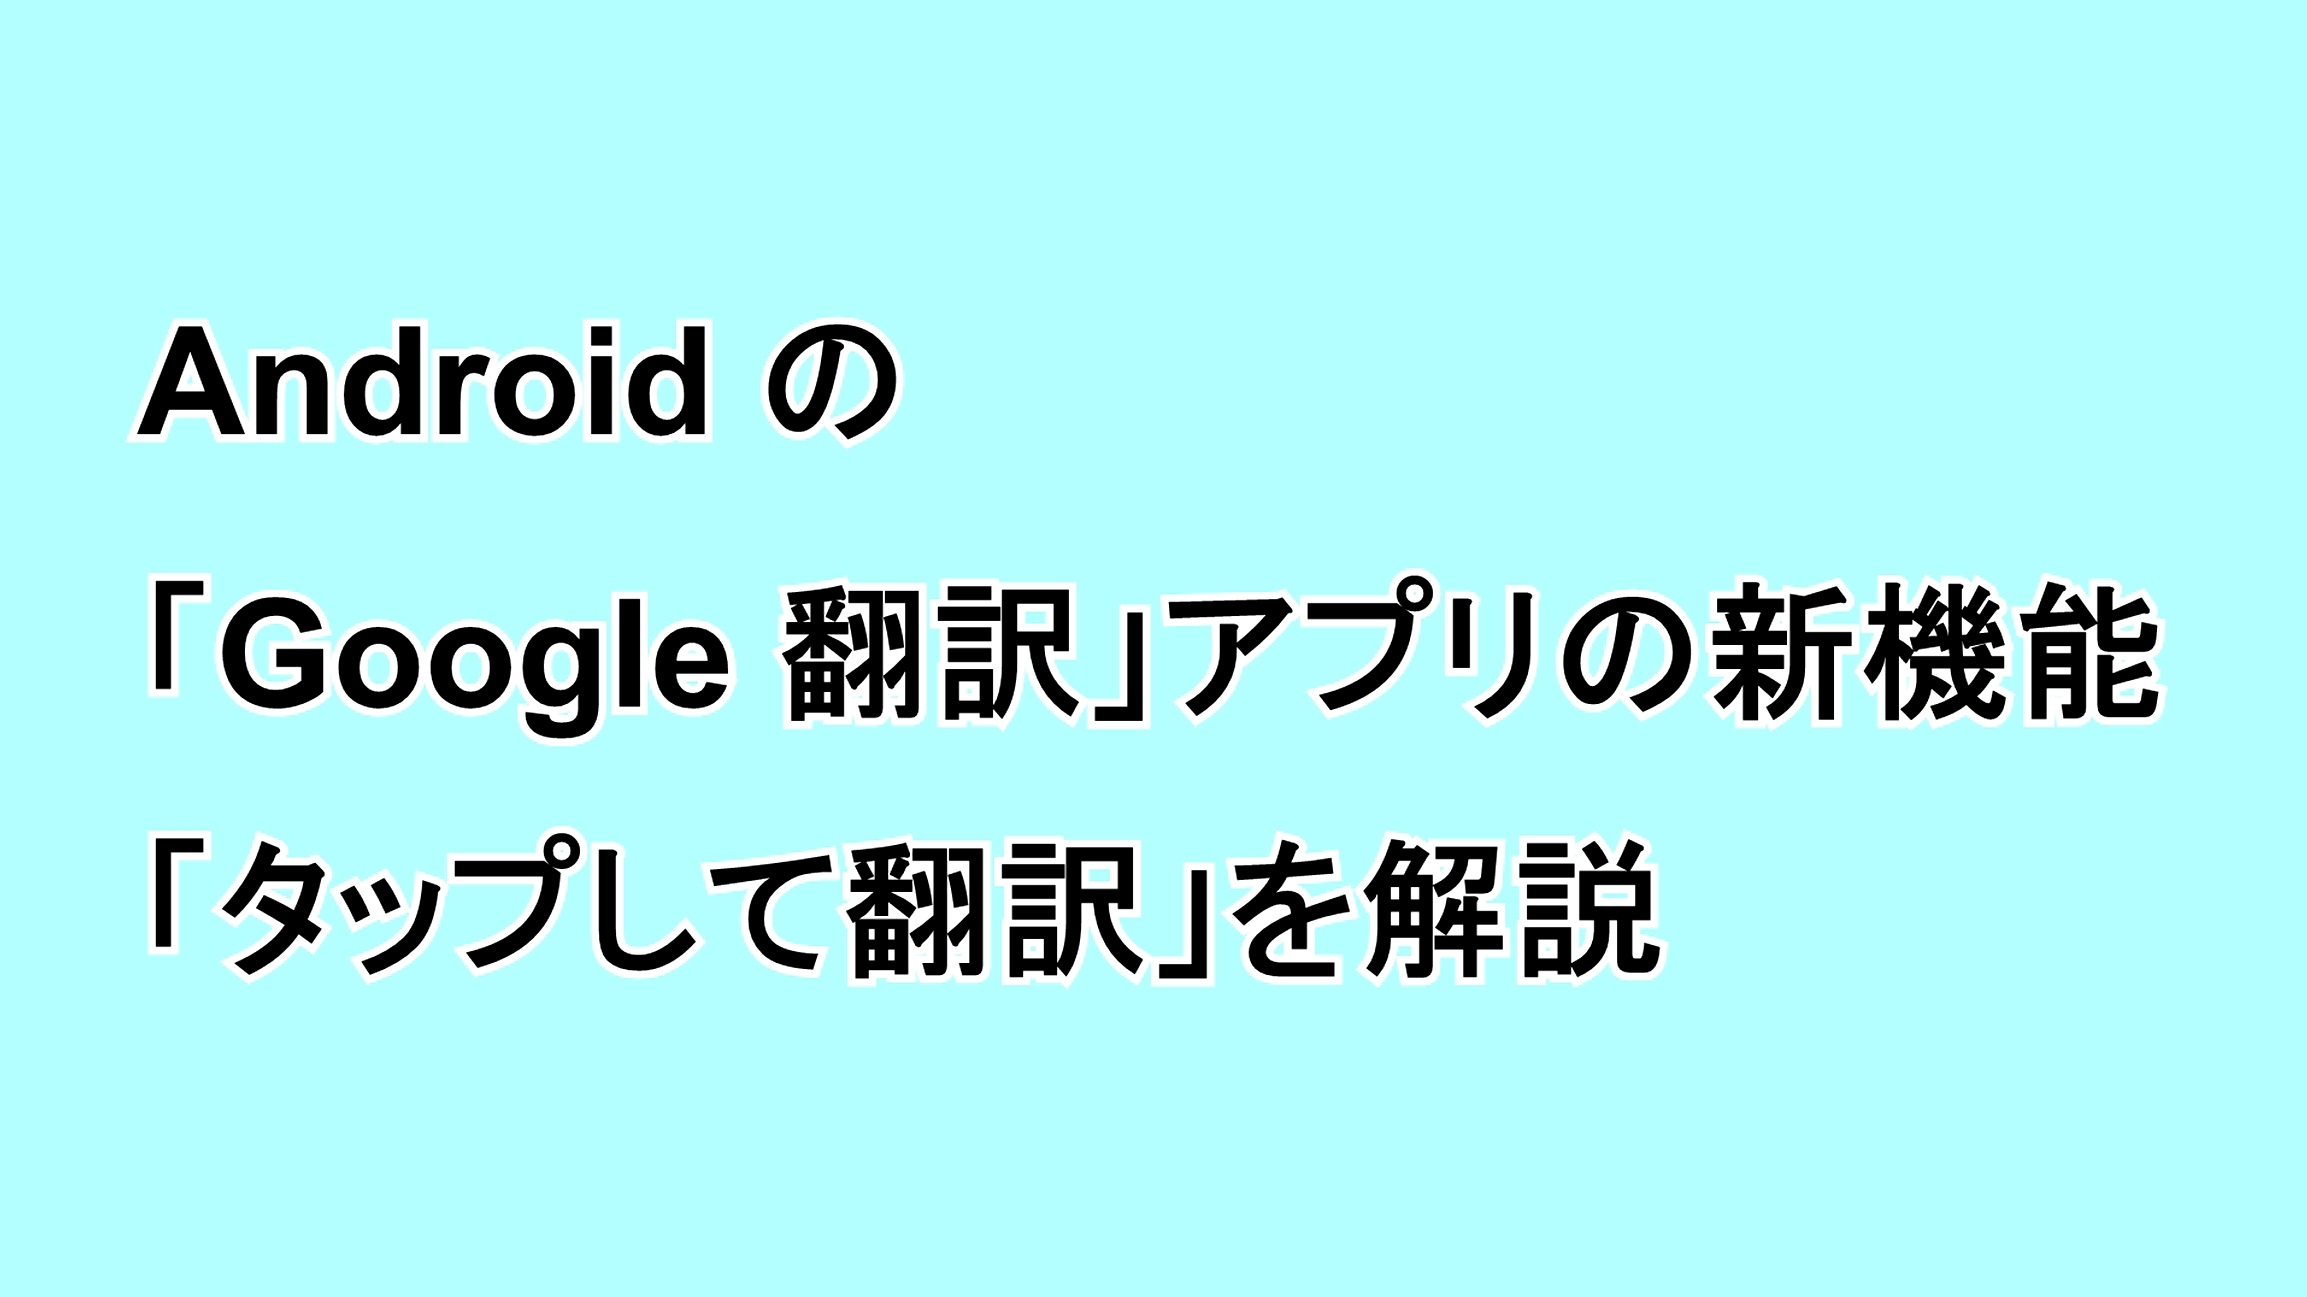 Android用の「Google 翻訳」アプリの新機能「タップして翻訳」を解説